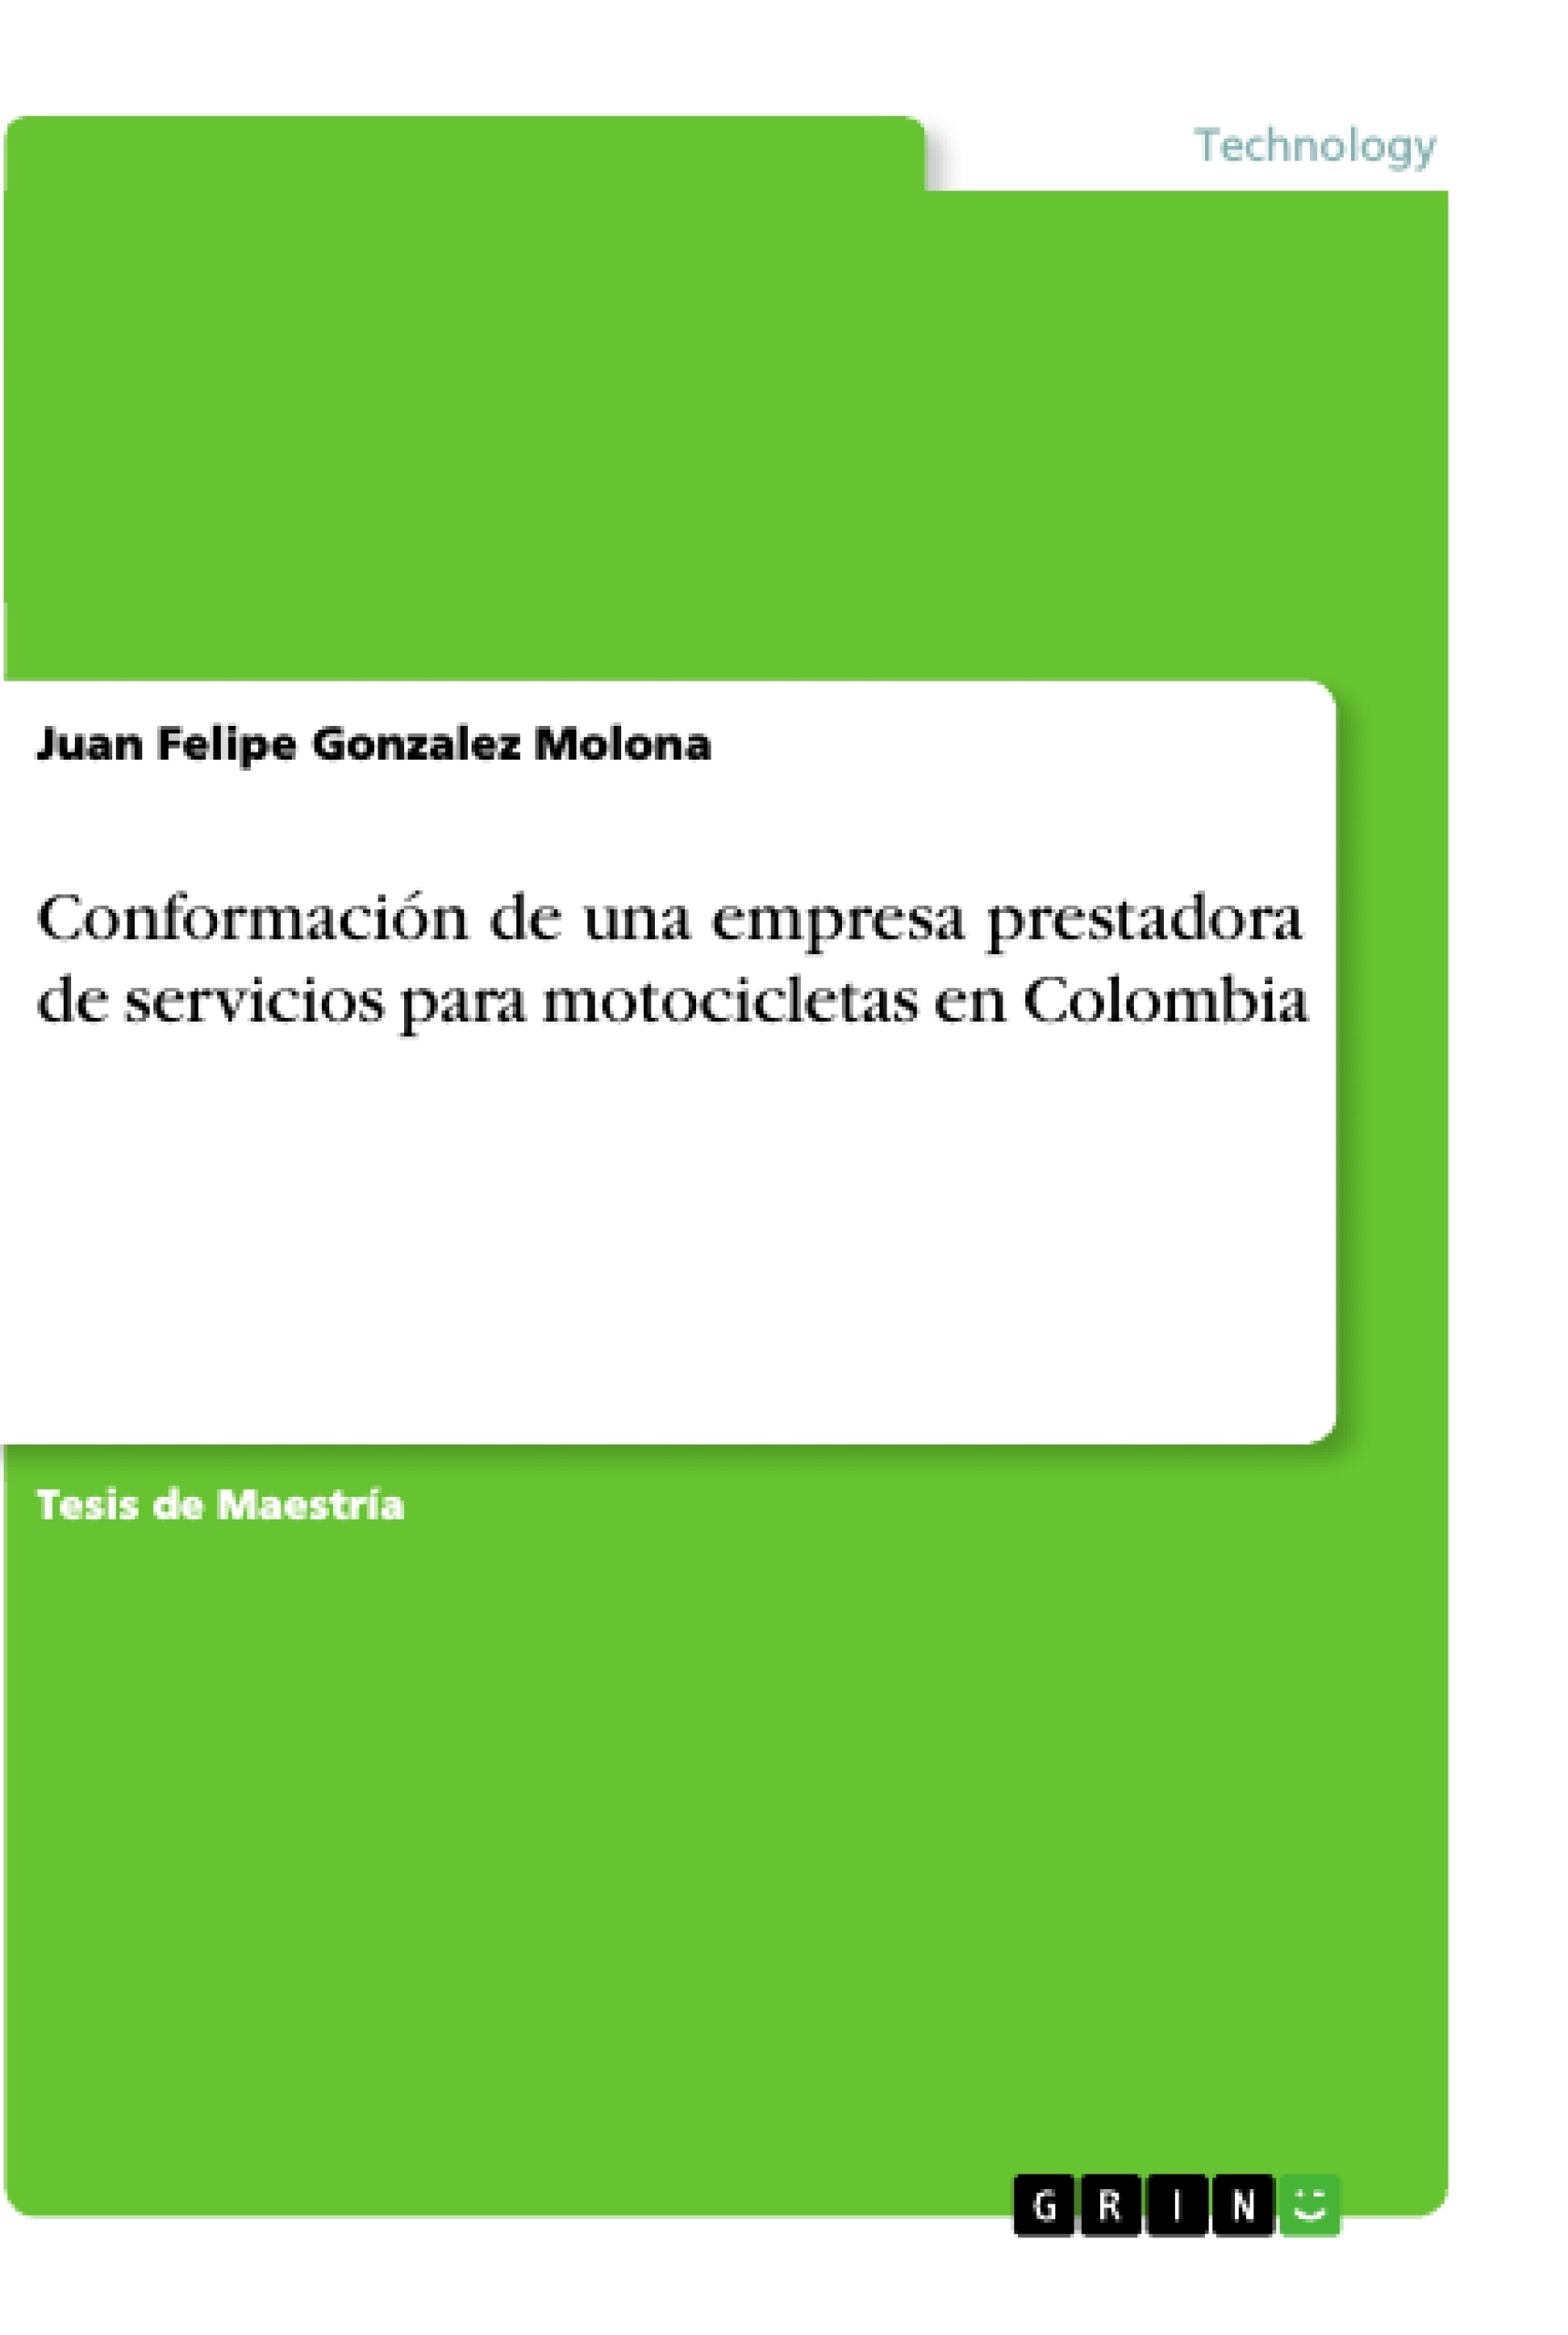 Titre: Conformación de una empresa prestadora de servicios para motocicletas en Colombia